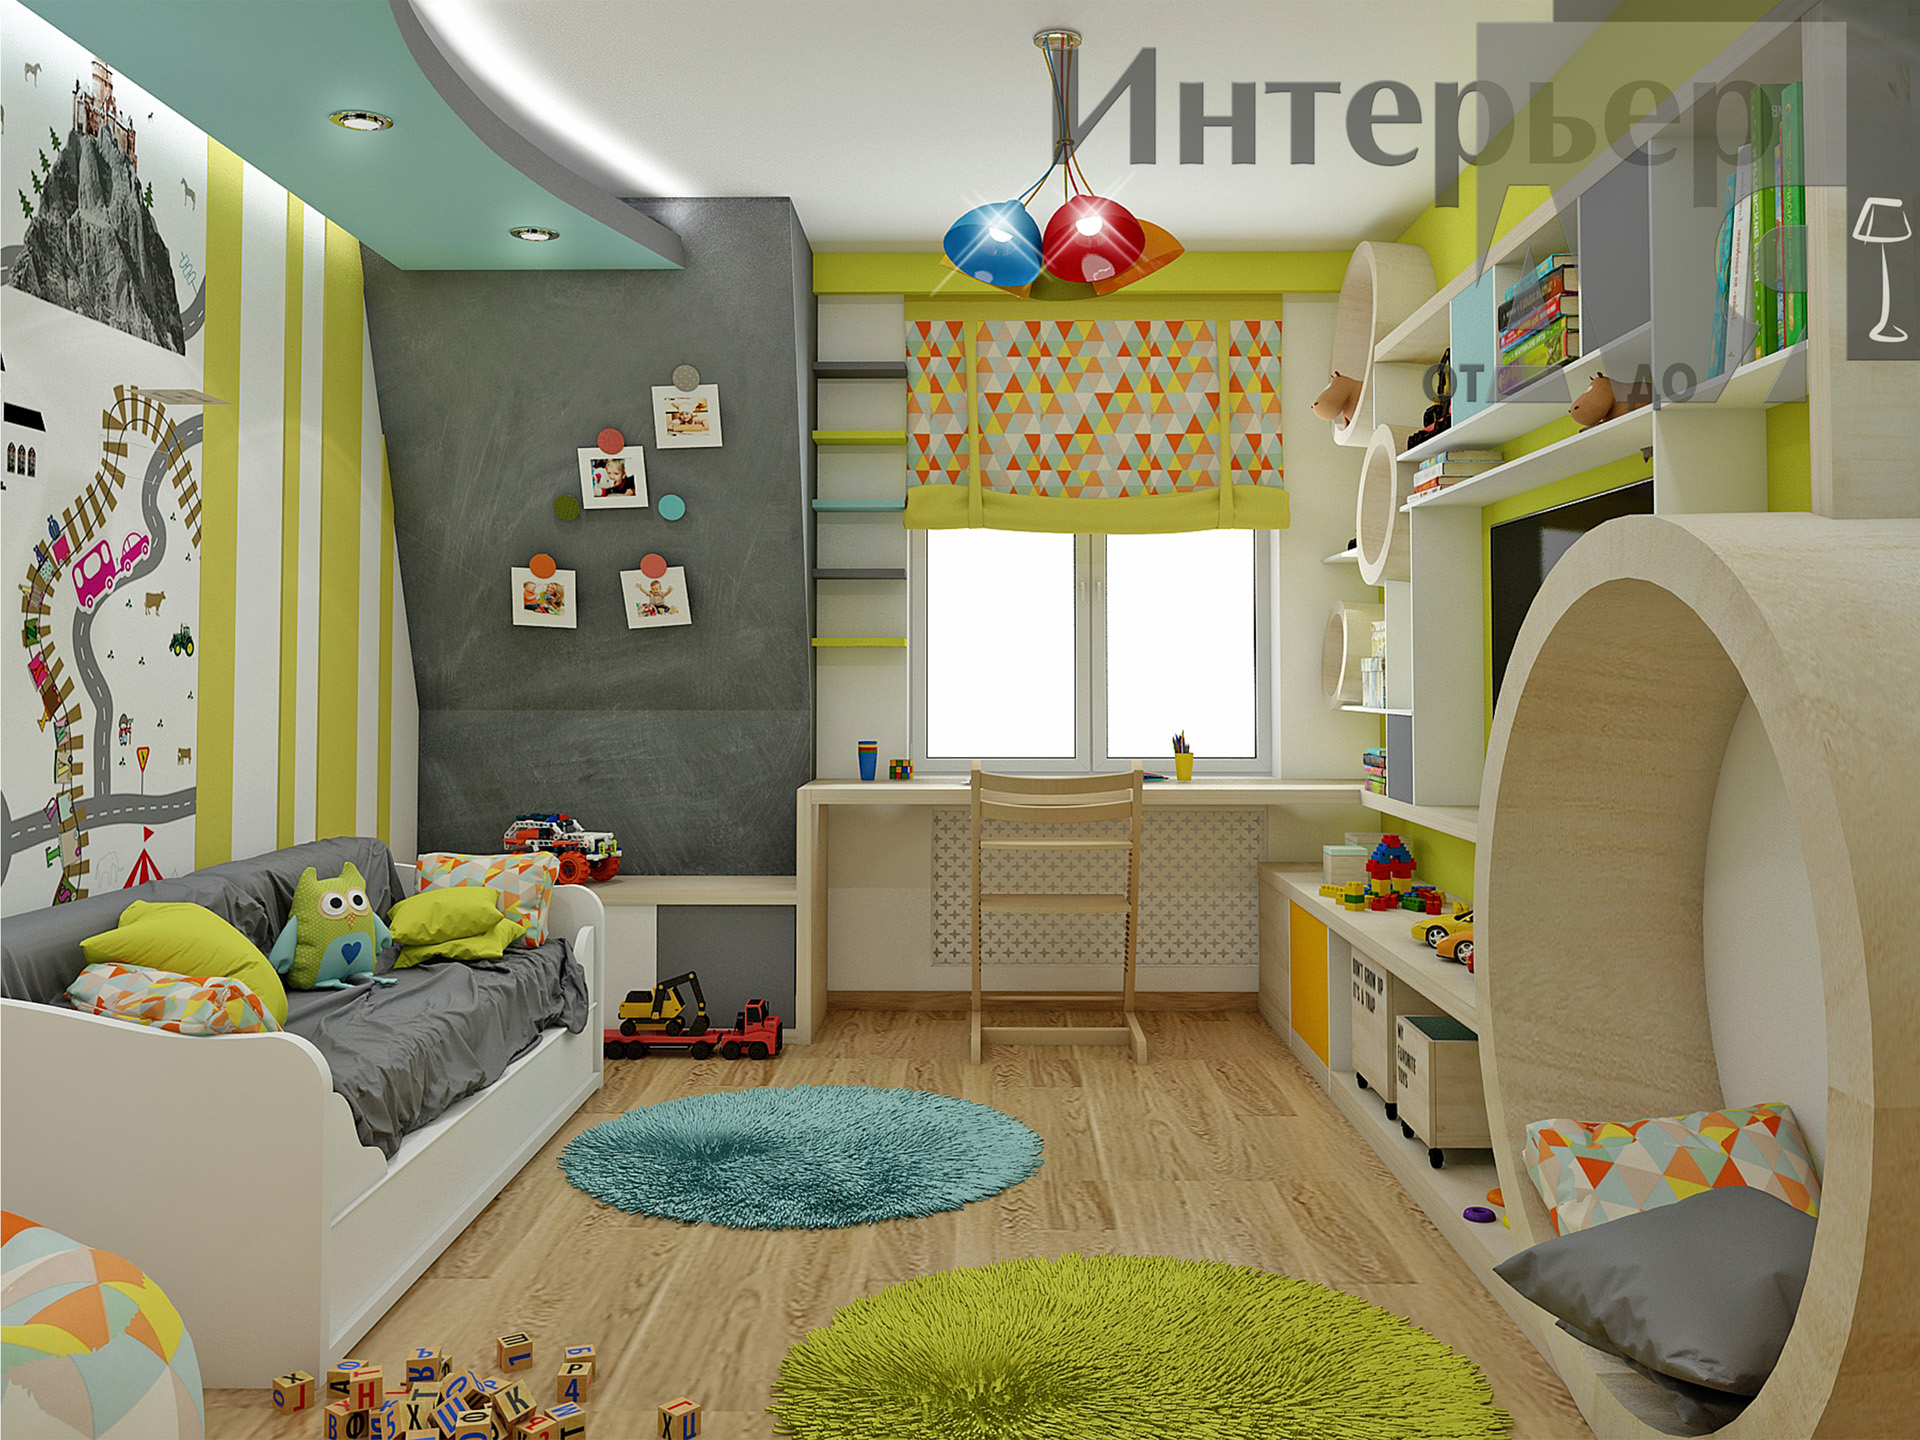 Выполненные работы по дизайн-проект детской комнаты для мальчика - 16 кв.м. - Интерьер от А до Я